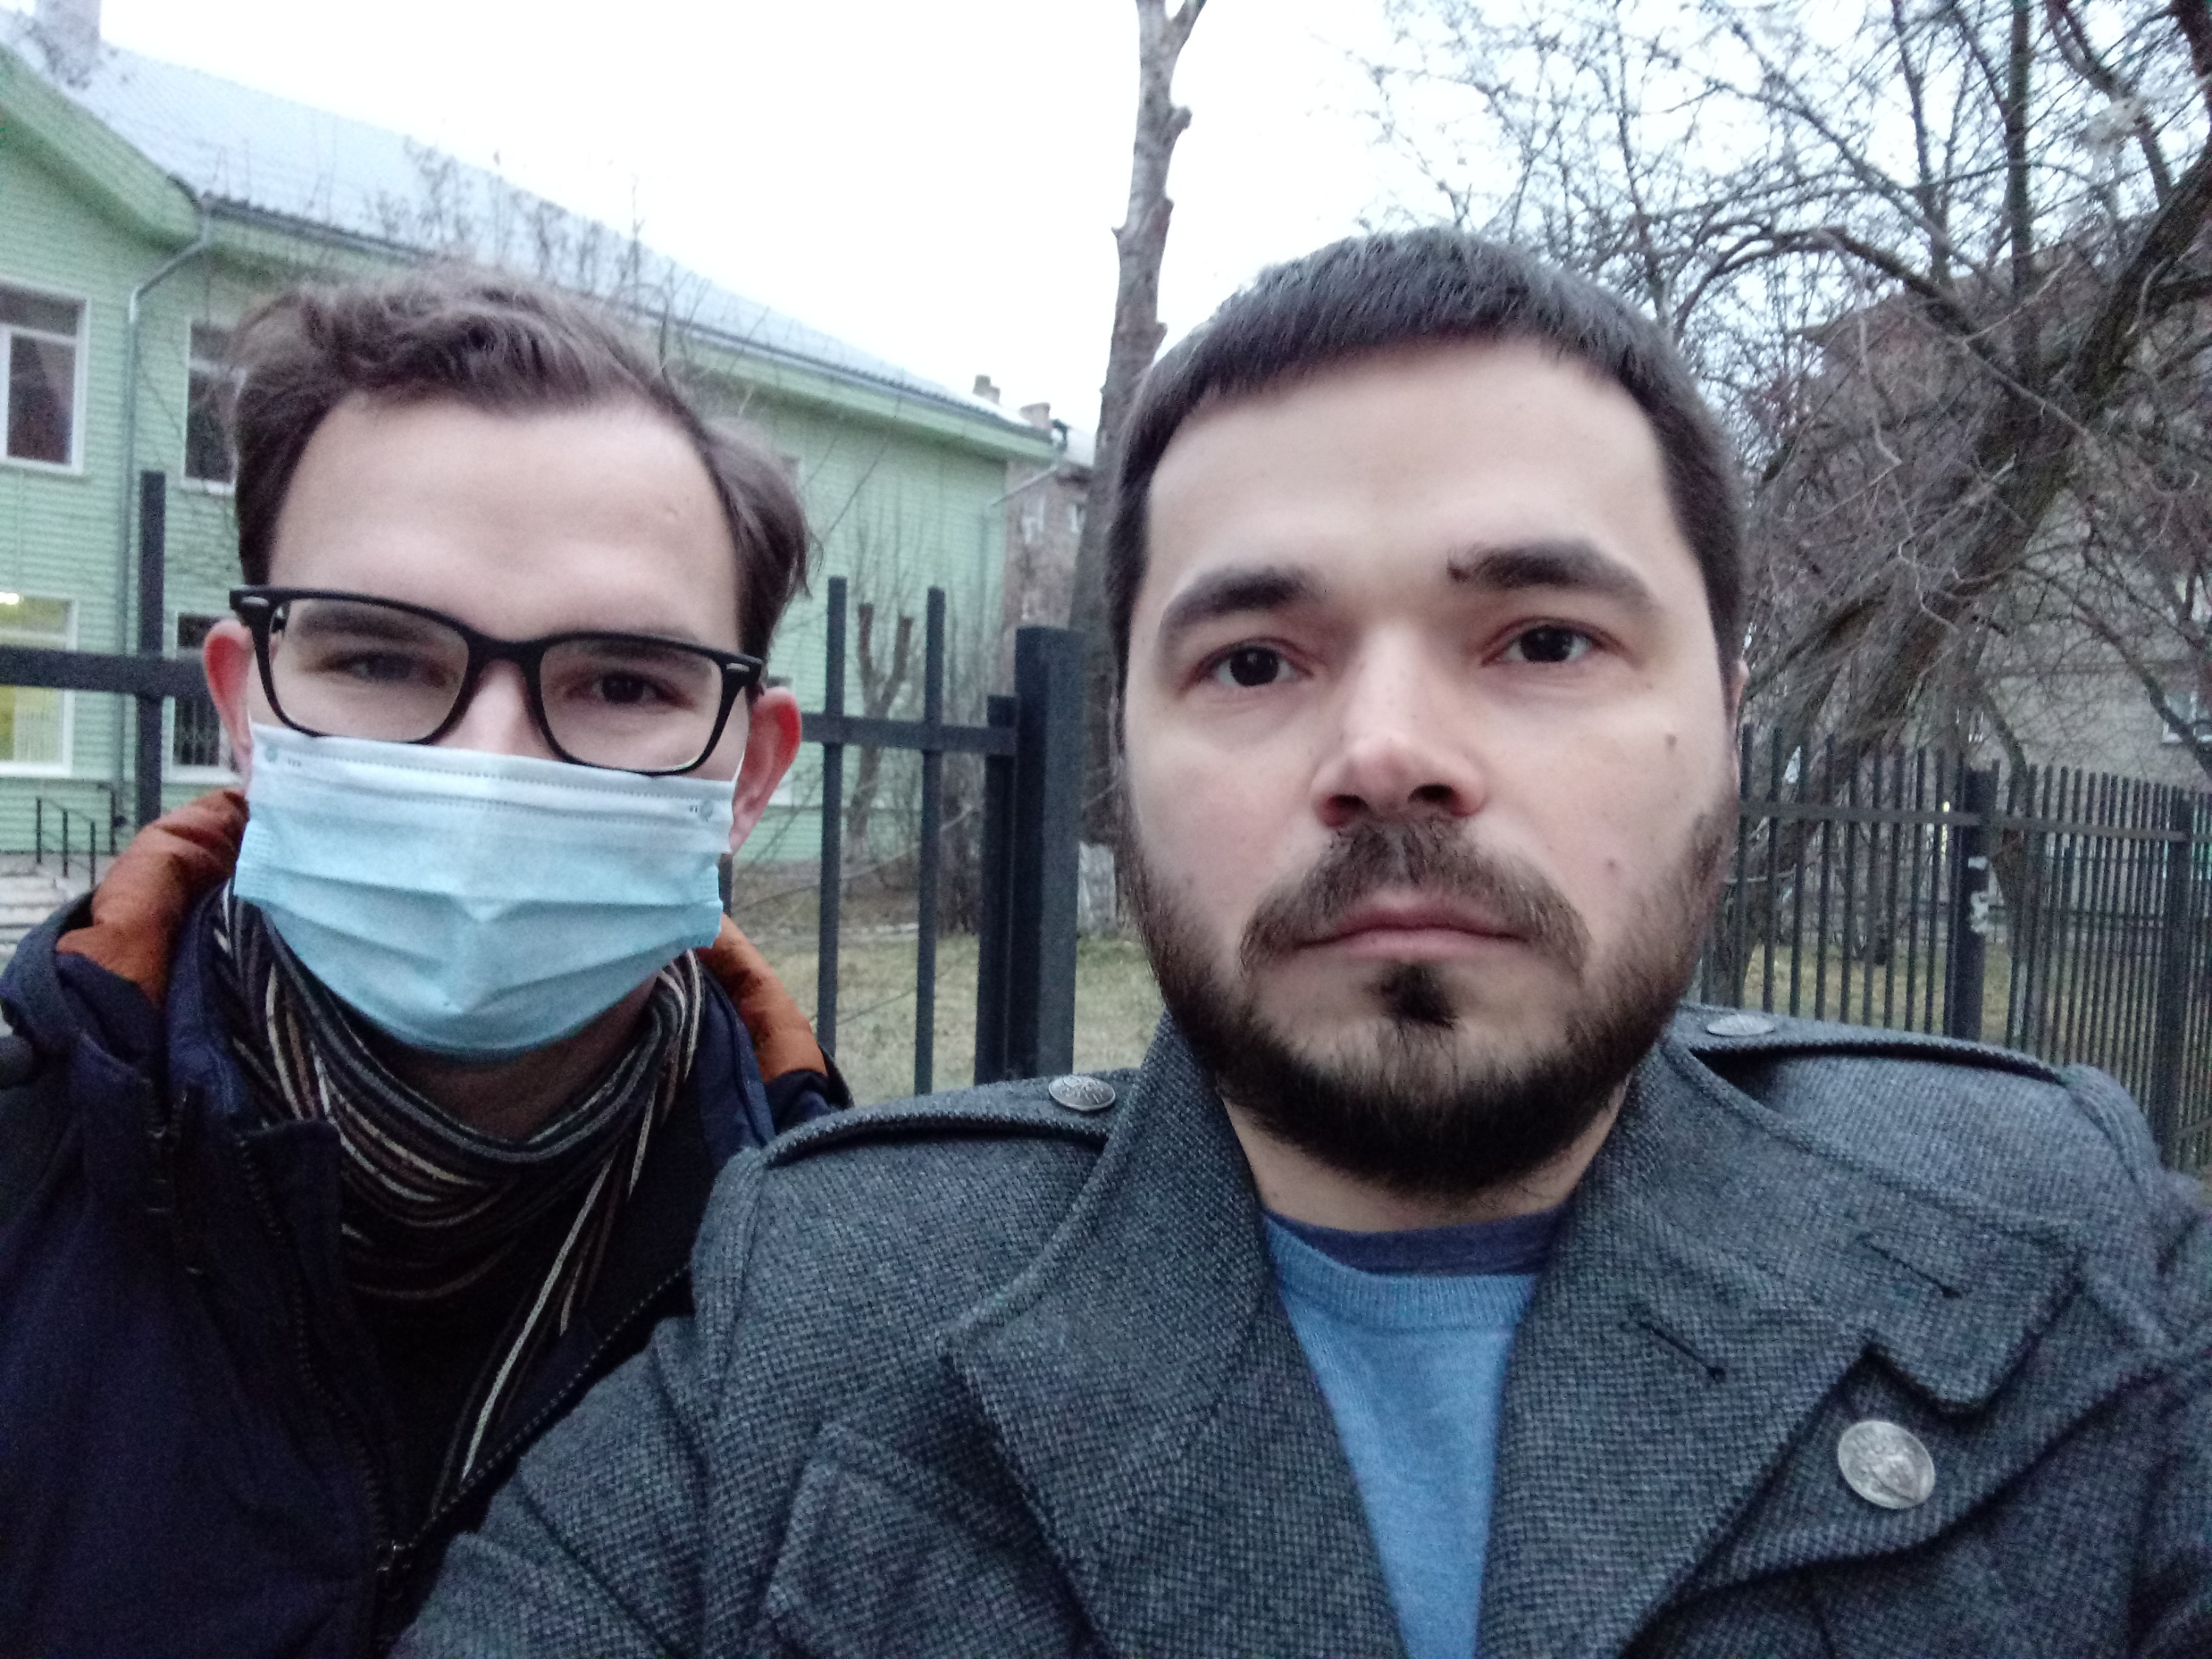 Врач Валерий и волонтер Кирилл Левченко 12 ноября ездили по вызовам в Заельцовском районе